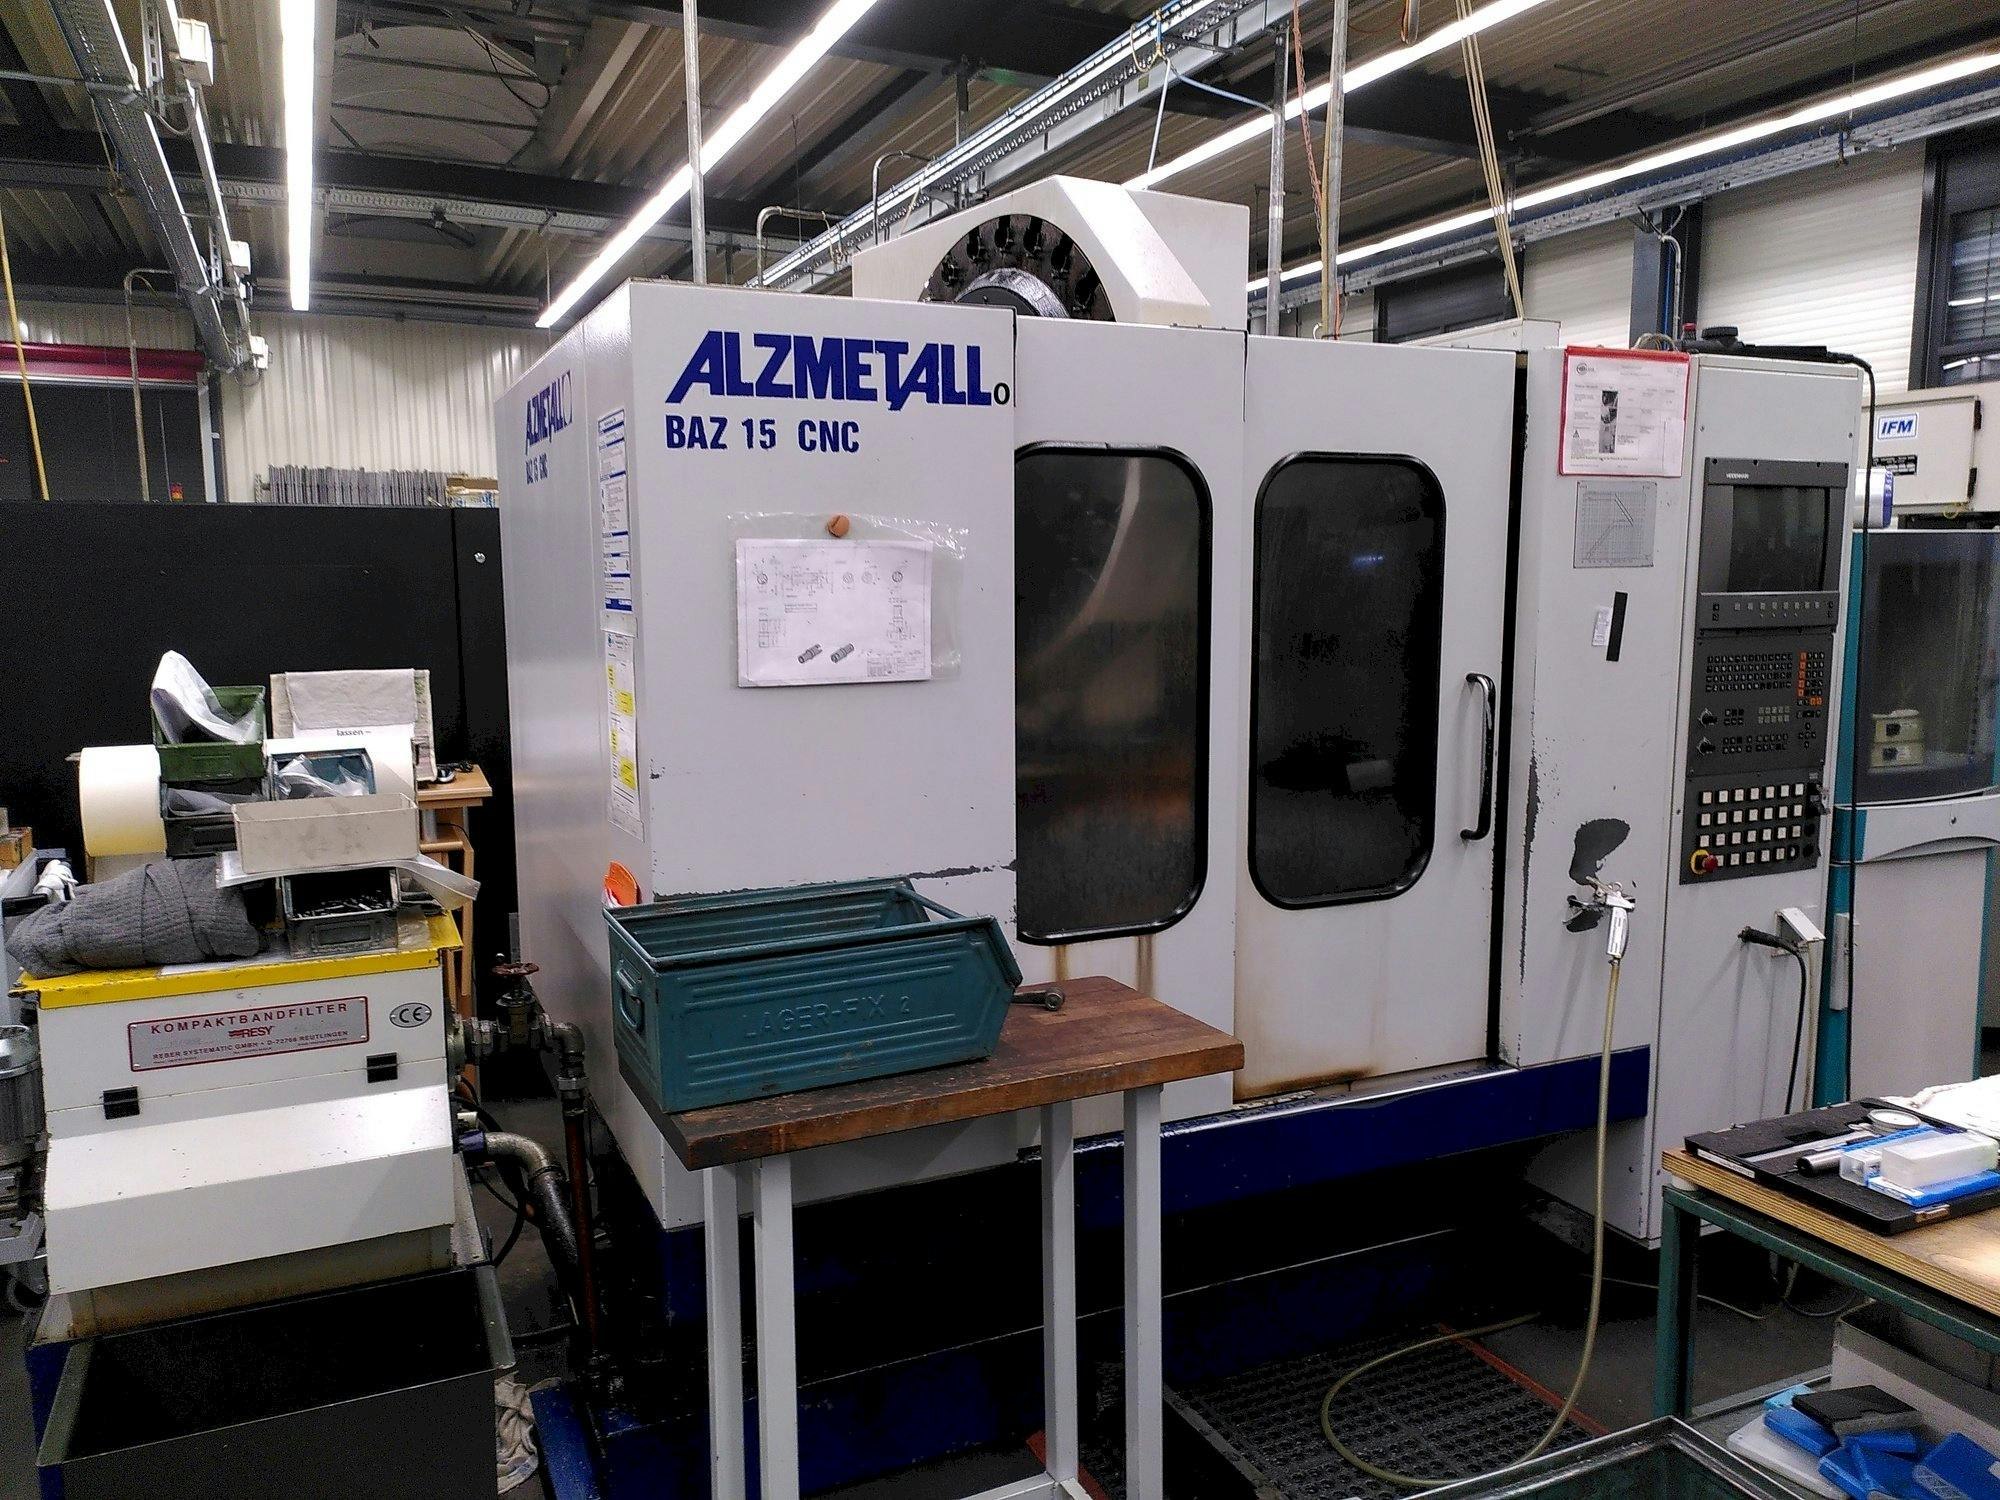 Čelní pohled  na Alzmetall BAZ 15 CNC  stroj